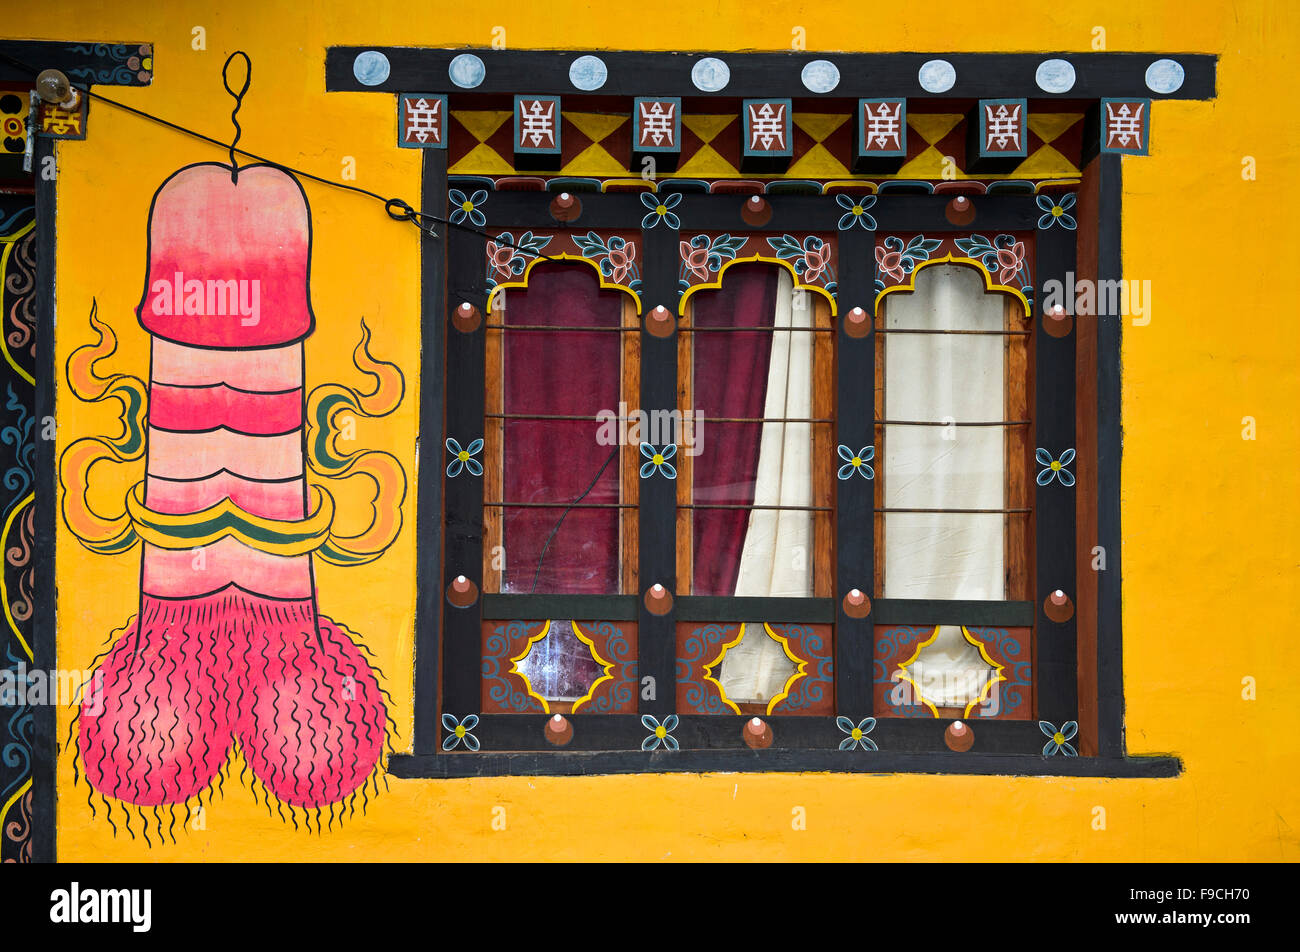 Culte phallus, peinture murale traditionnelle d'un symbole phallique sur une façade d'un bâtiment résidentiel, Teoprongchu, Bhoutan Banque D'Images